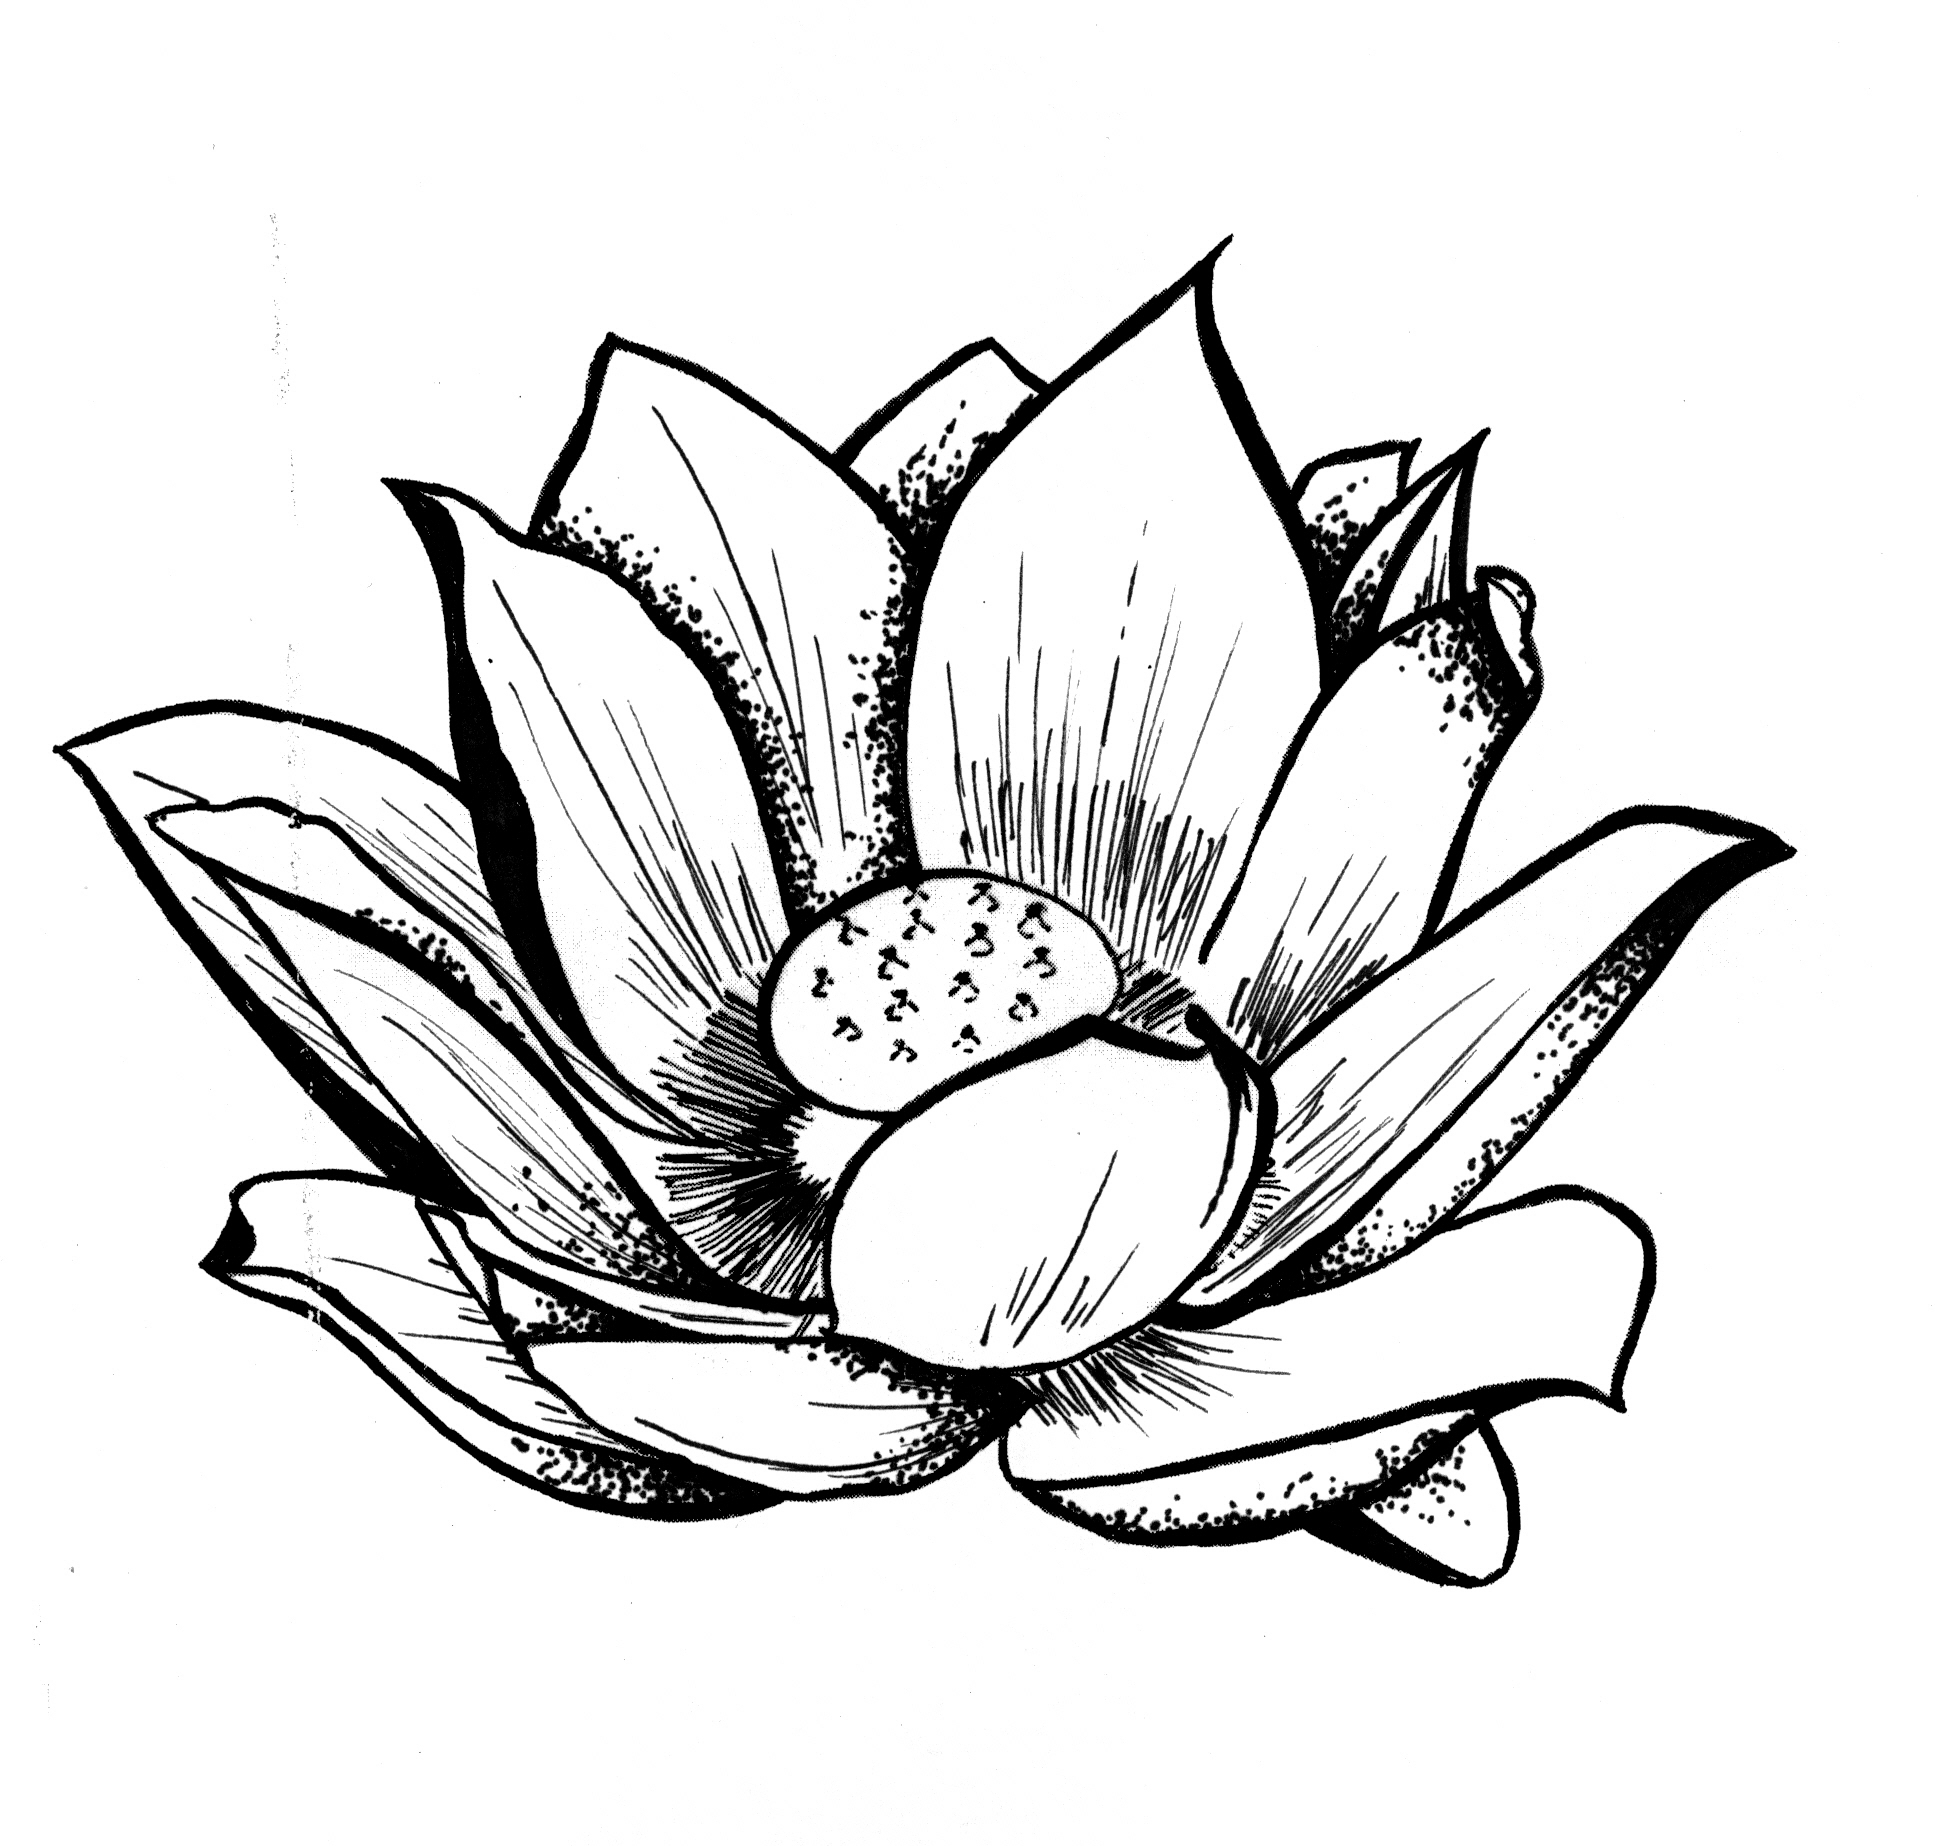 Lotus Drawing | Free download best Lotus Drawing on ...
